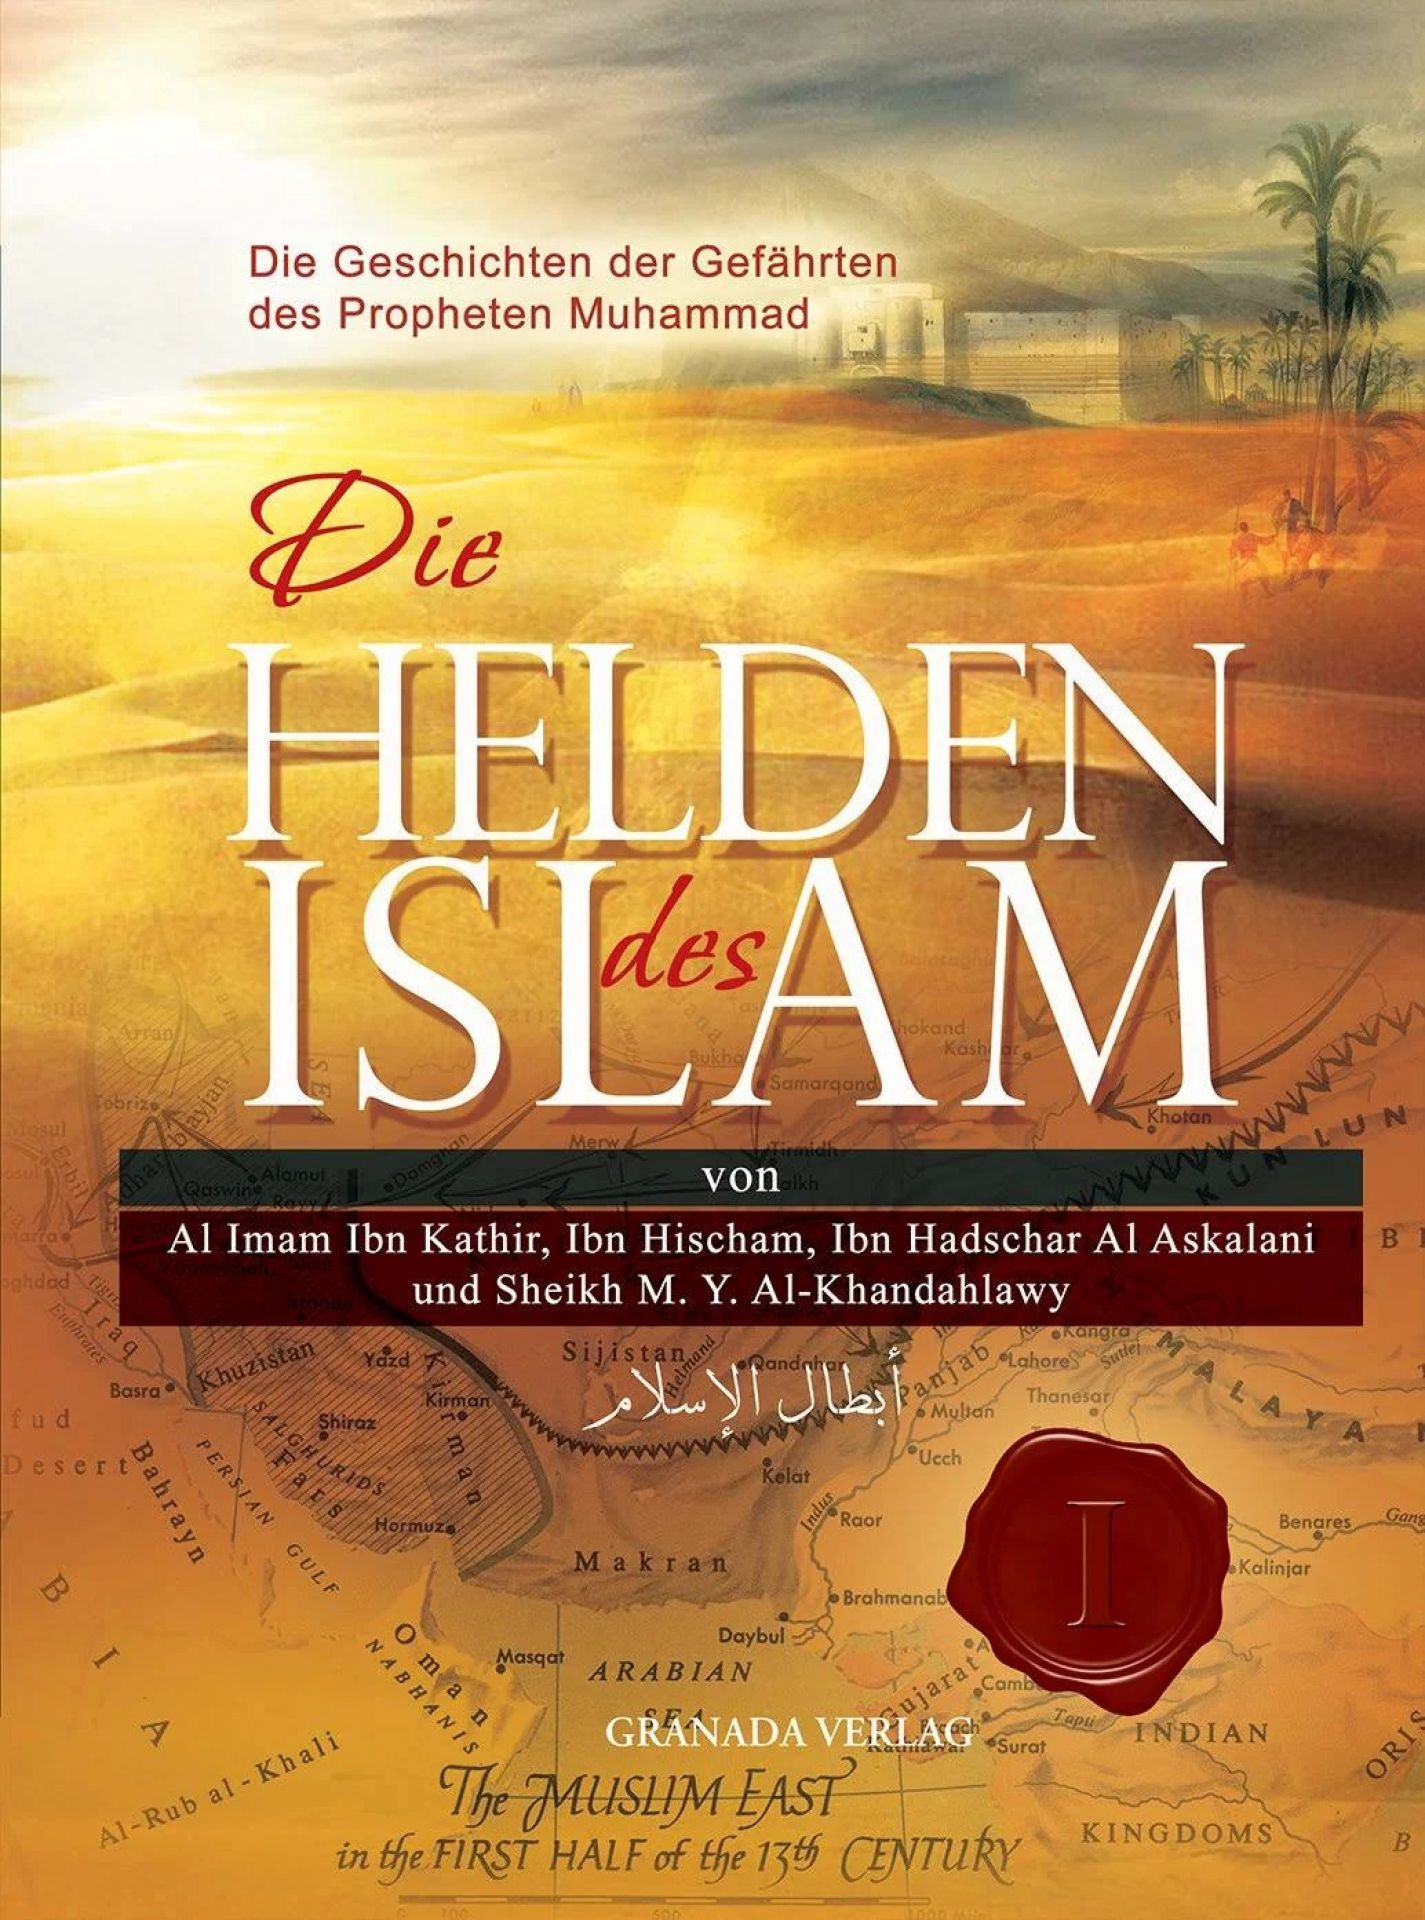 Die Helden Des Islam - Die Geschichten Der Gefährten Des Propheten Muhammad